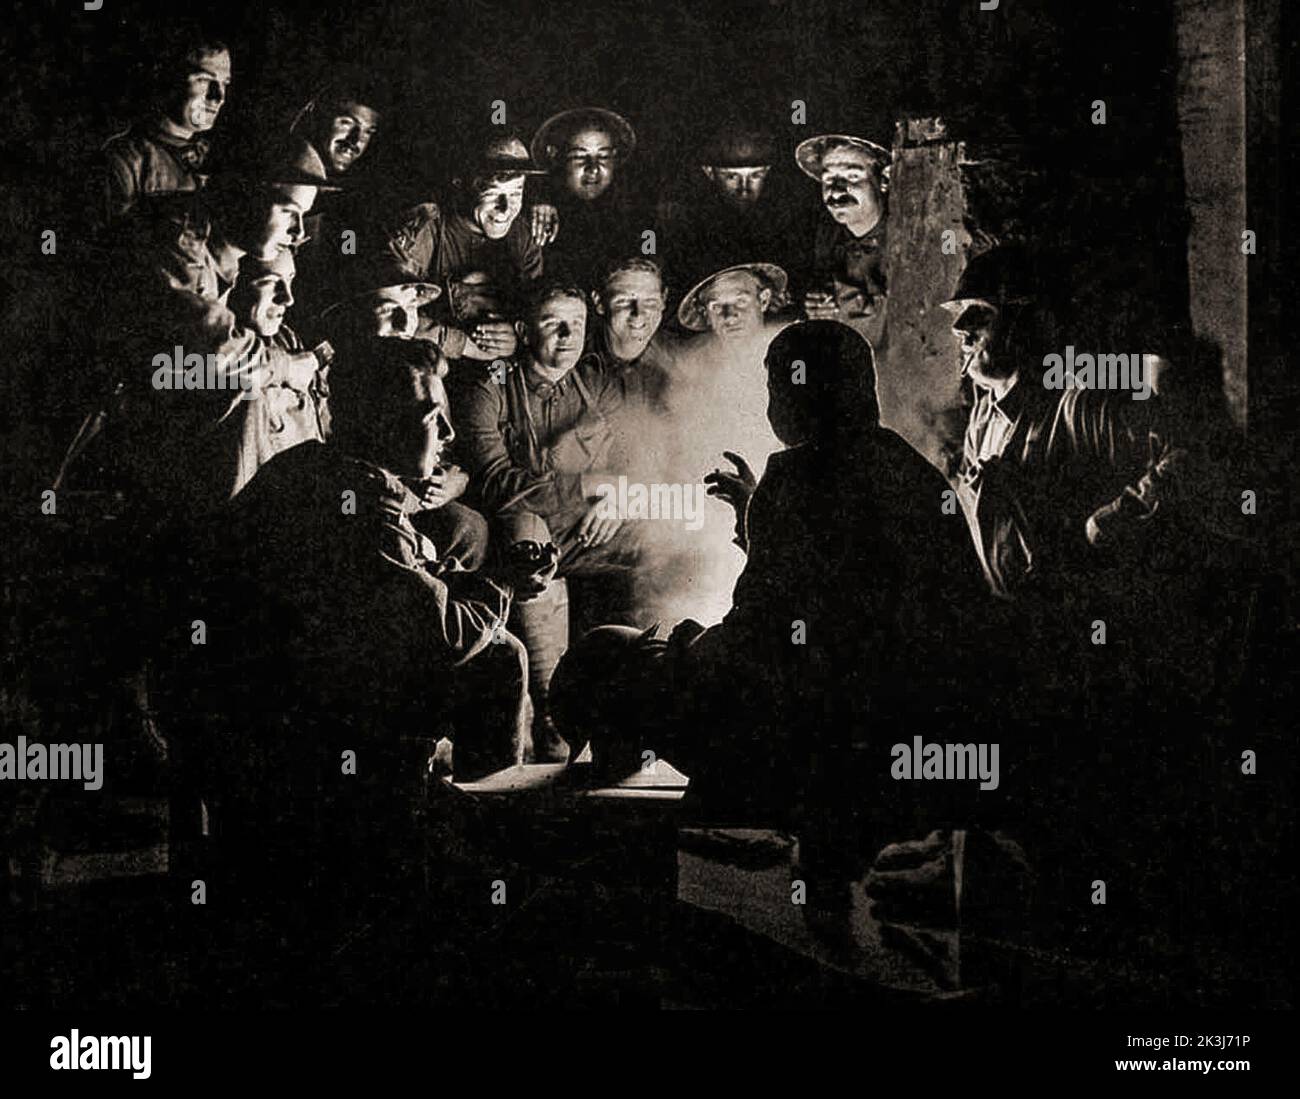 Soldaten versammeln sich in einem Dugout für eine Geschichte oder militärische Briefing in einem Dugout während der Dritten Schlacht von Ypern 1917 – die von Sir Douglas Haig entwickelt wurde, um den Passchendaele-Grat zu erobern. Foto von Frank Hurley (1885 1962), einem australischen Fotografen. Stockfoto